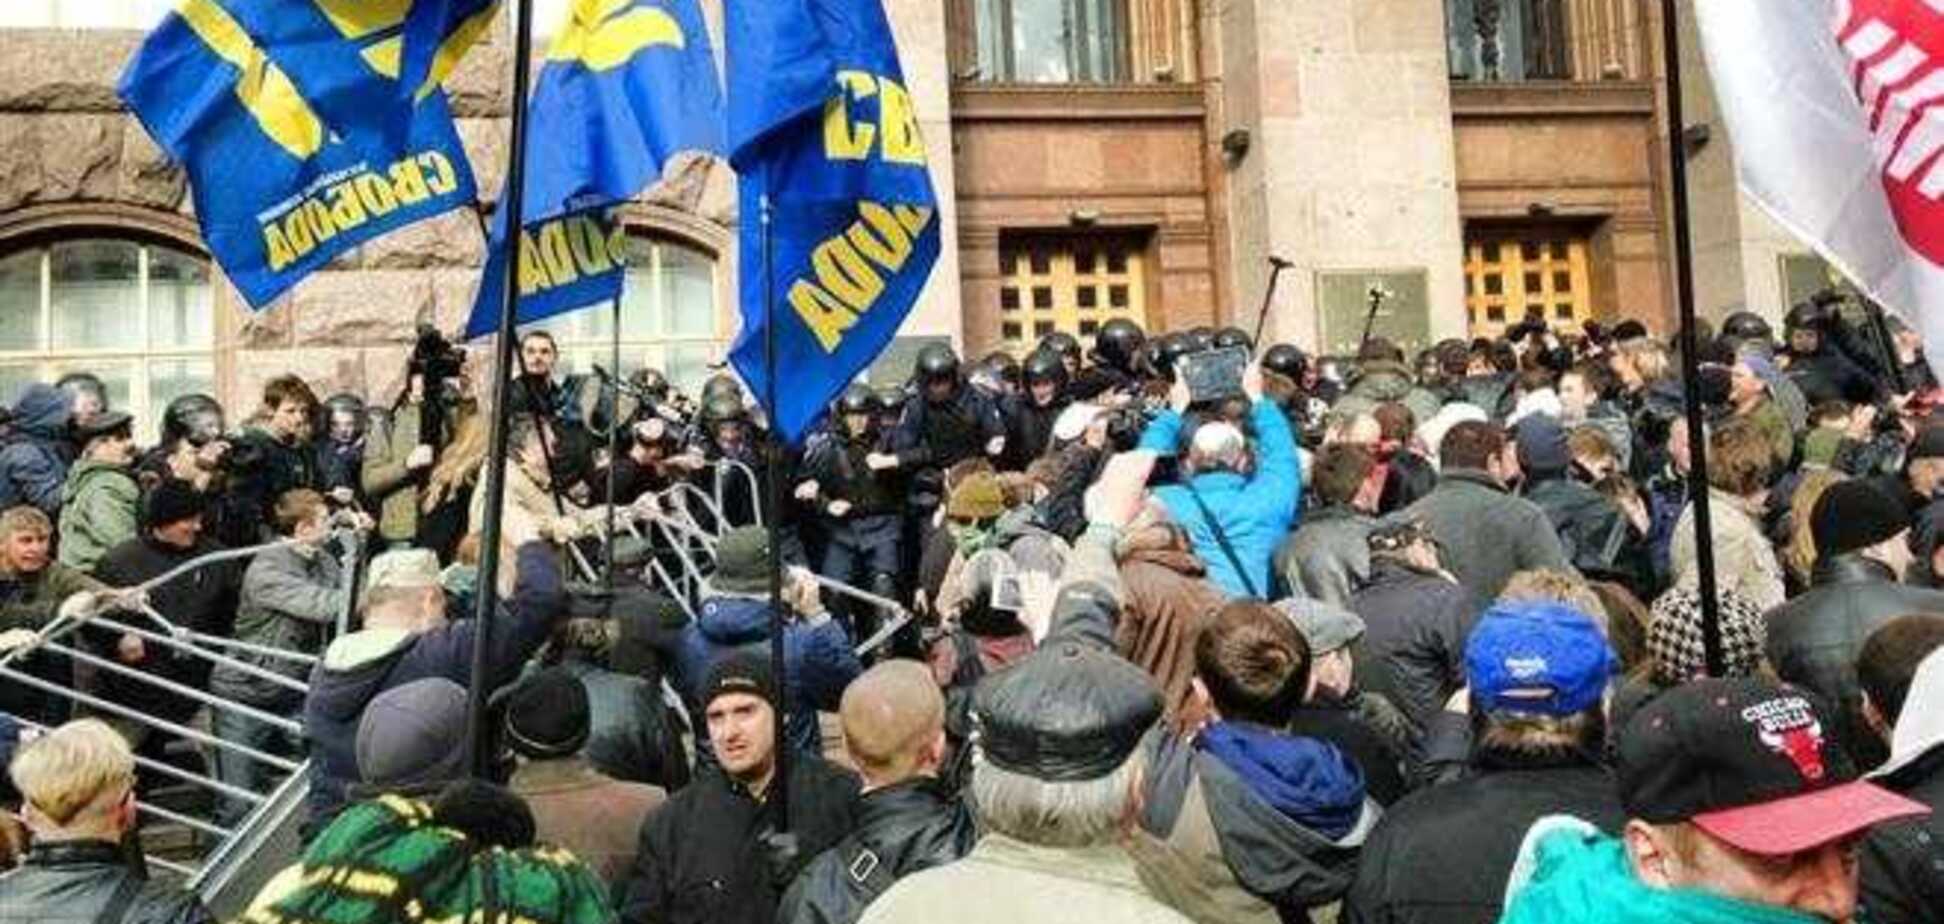  Бойцы из Киевсовета оборудуют в здании спортзал